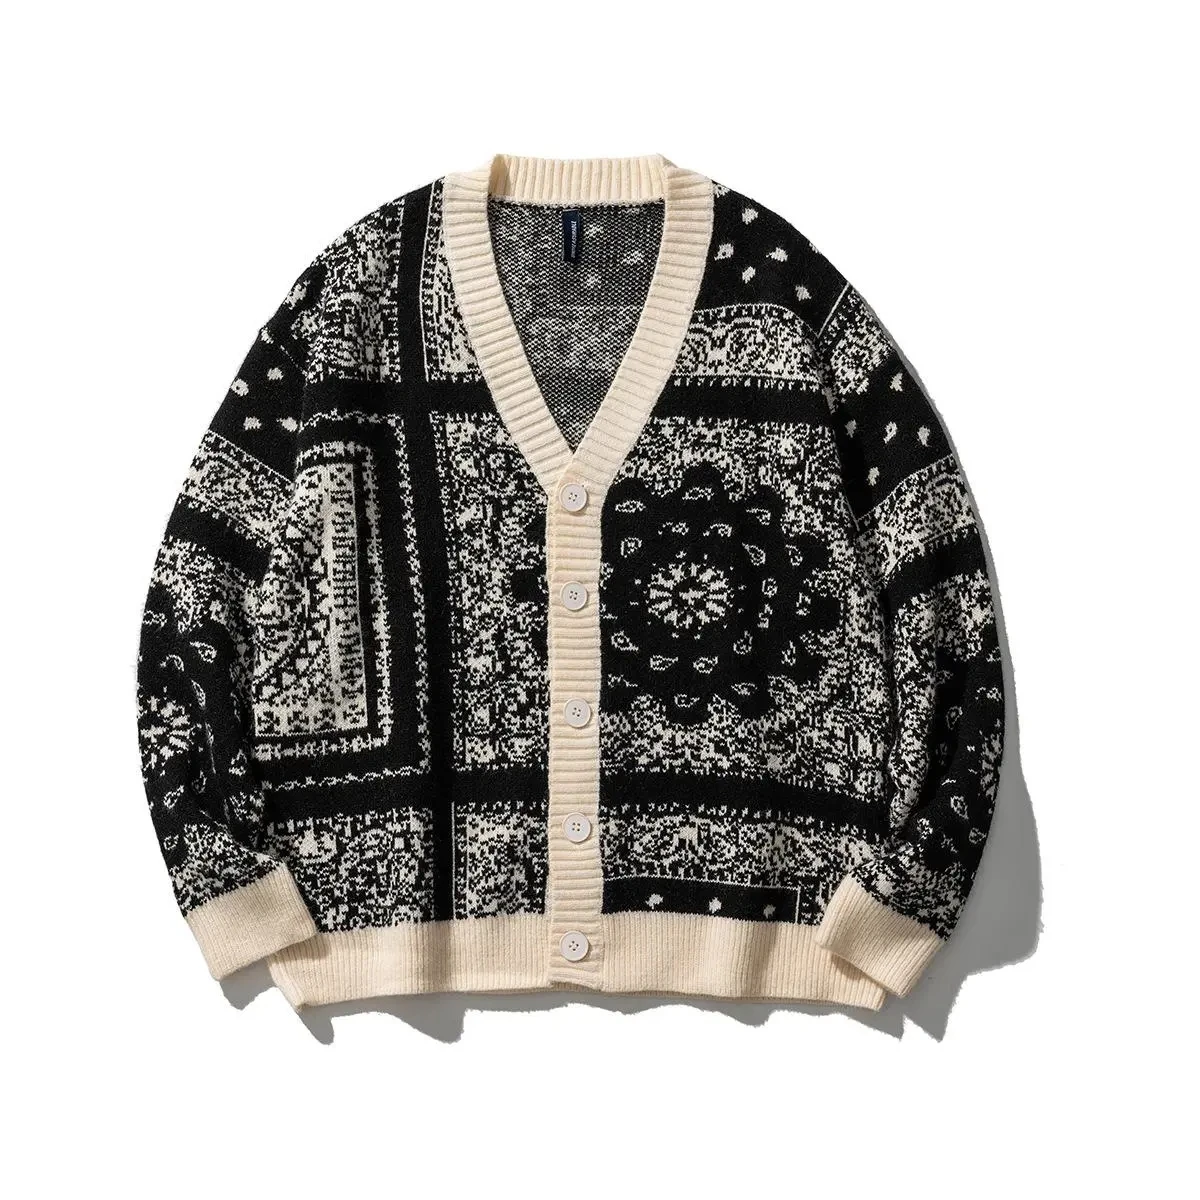 Кардиган, свитер, мужской осенний свитер с V-образным вырезом, модный японский цветок кешью, свободный мужской повседневный крутой модный студенческий топ, зима